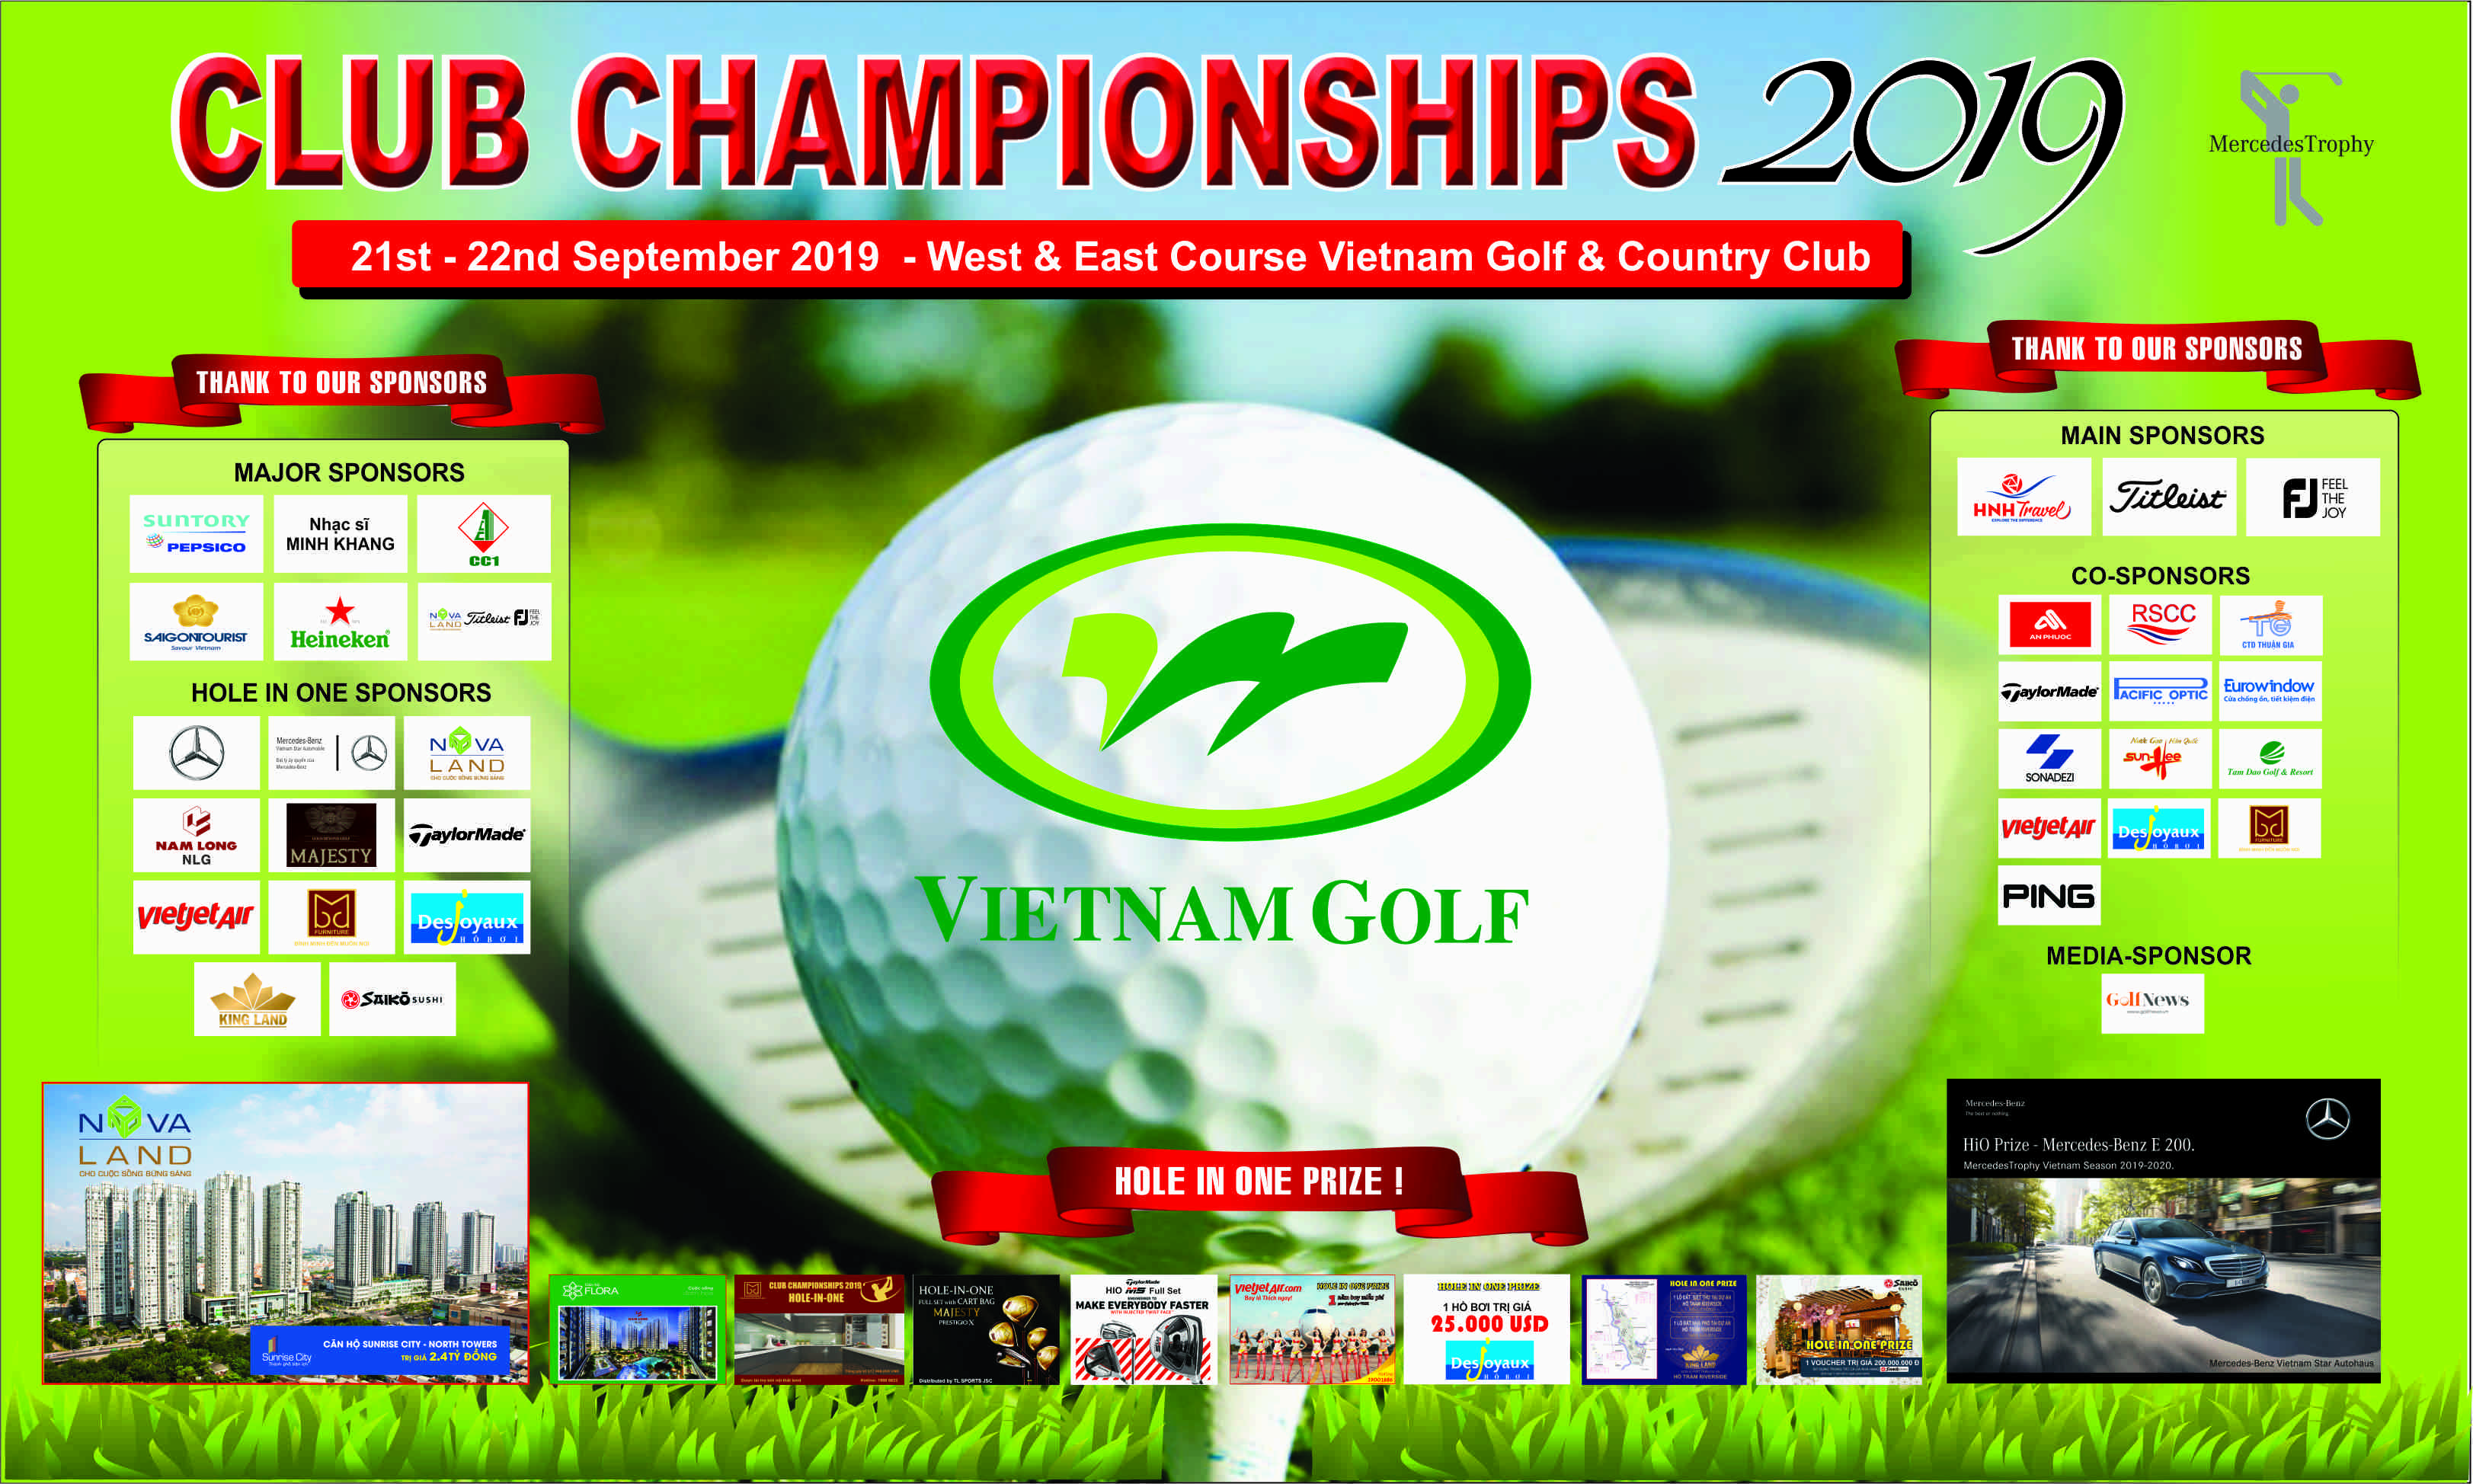 Giải golf Club Championship 2019 tại Vietnam Golf & Country Club chuẩn bị khởi tranh